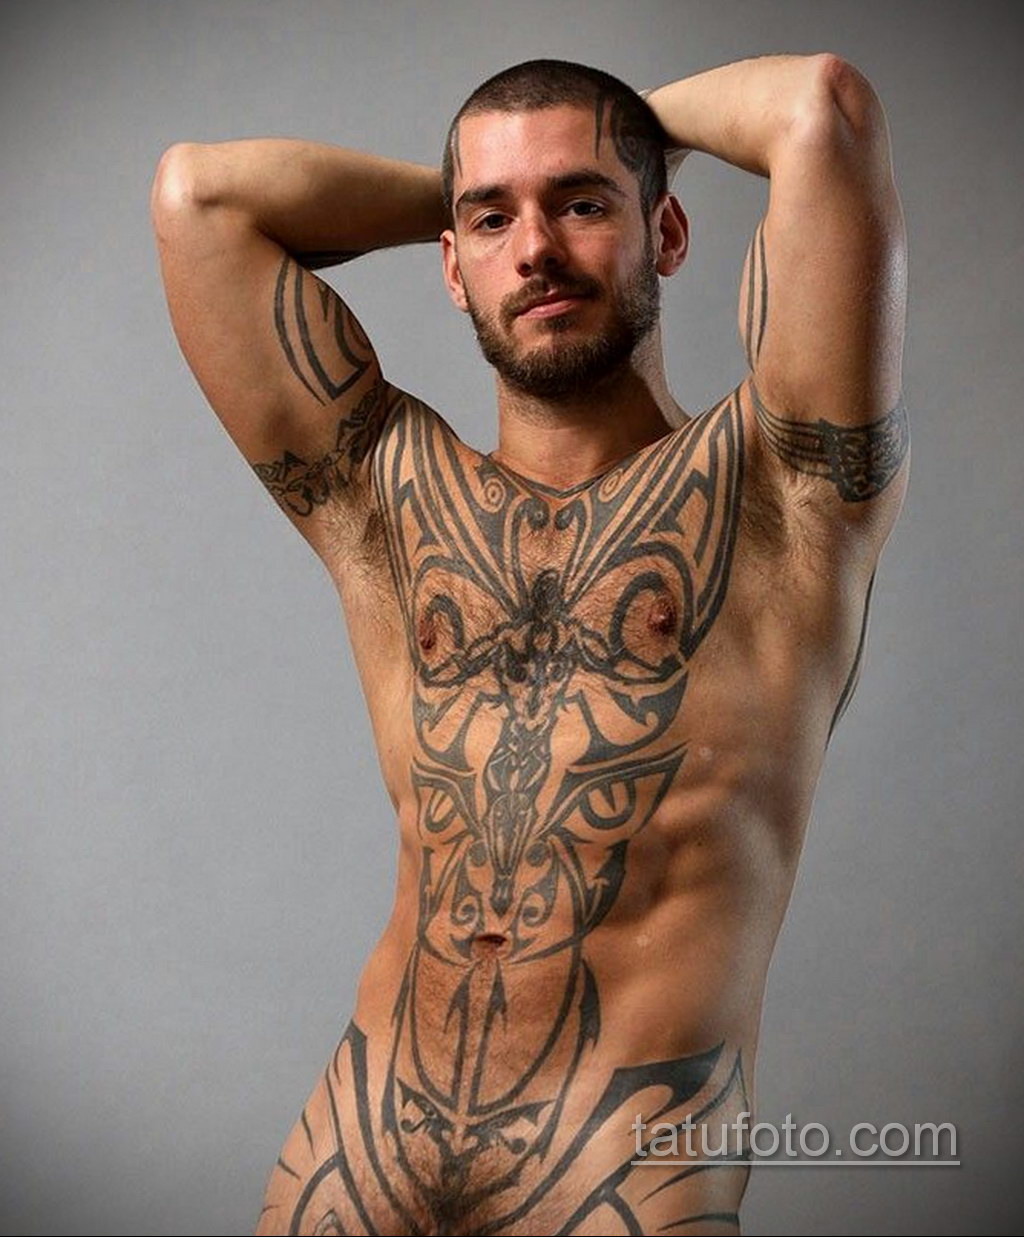 Tattoos of naked men